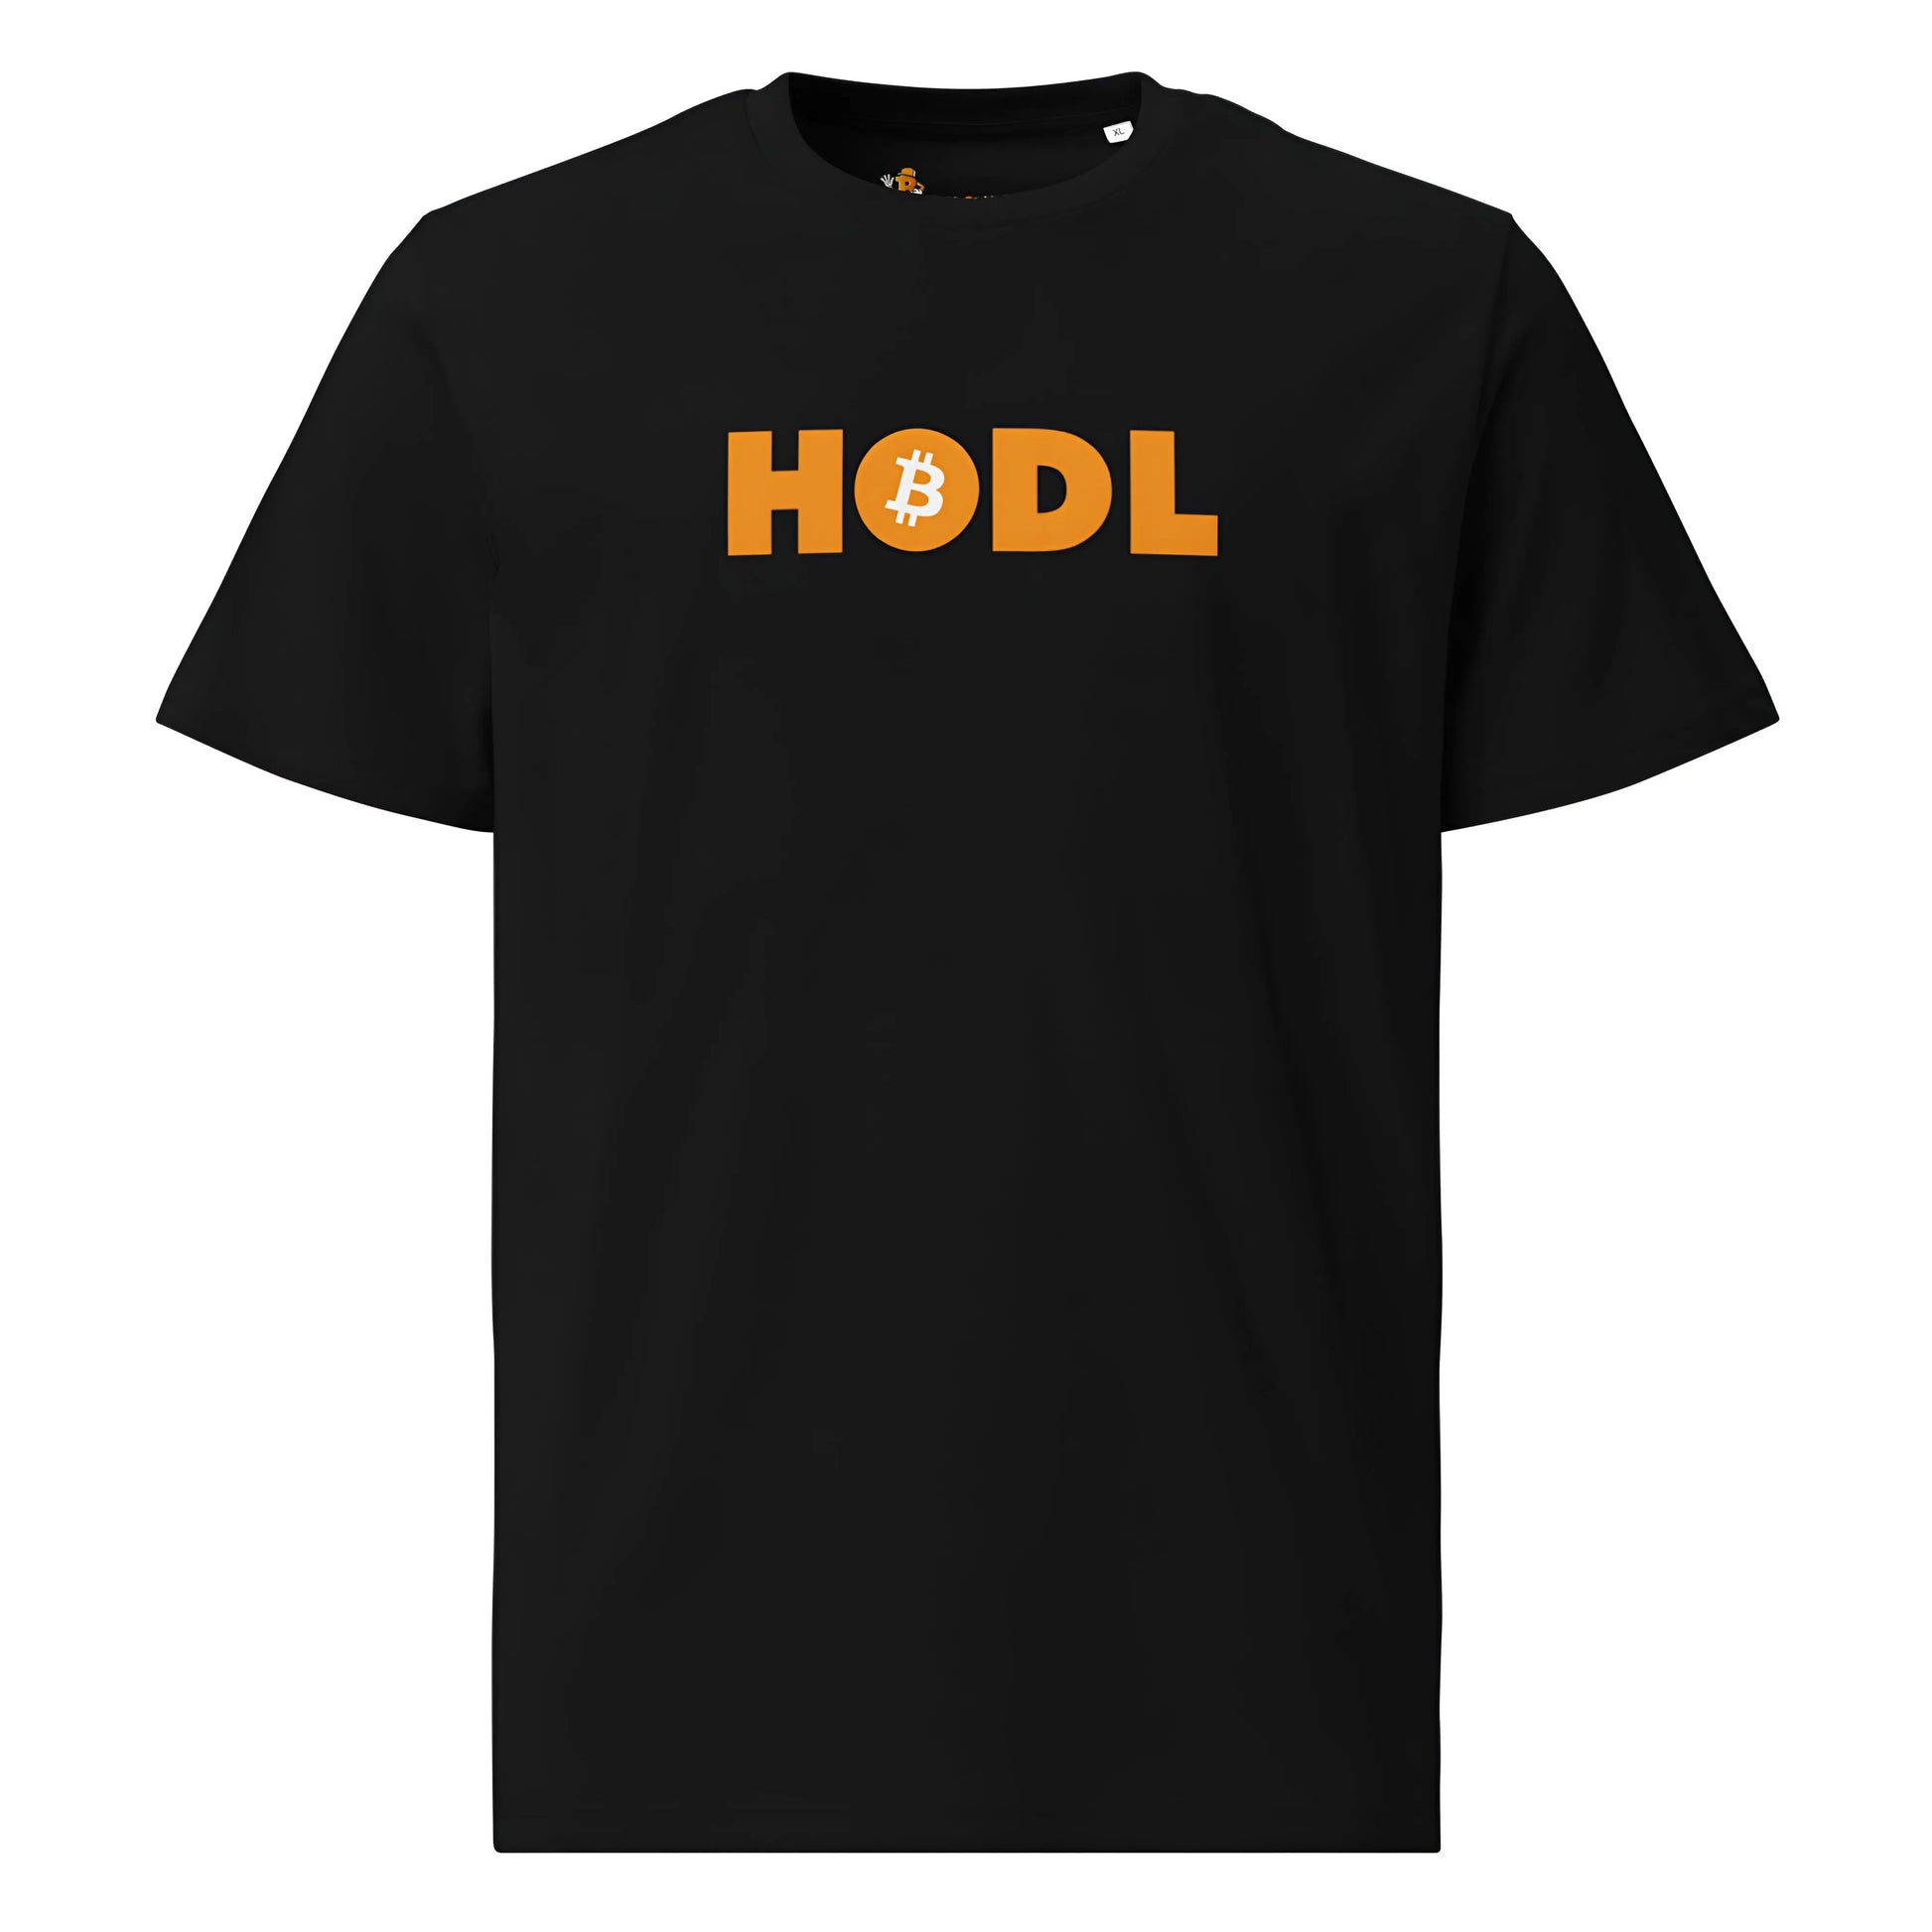 HODL - Premium Unisex Organic Cotton Bitcoin T-shirt Black Color